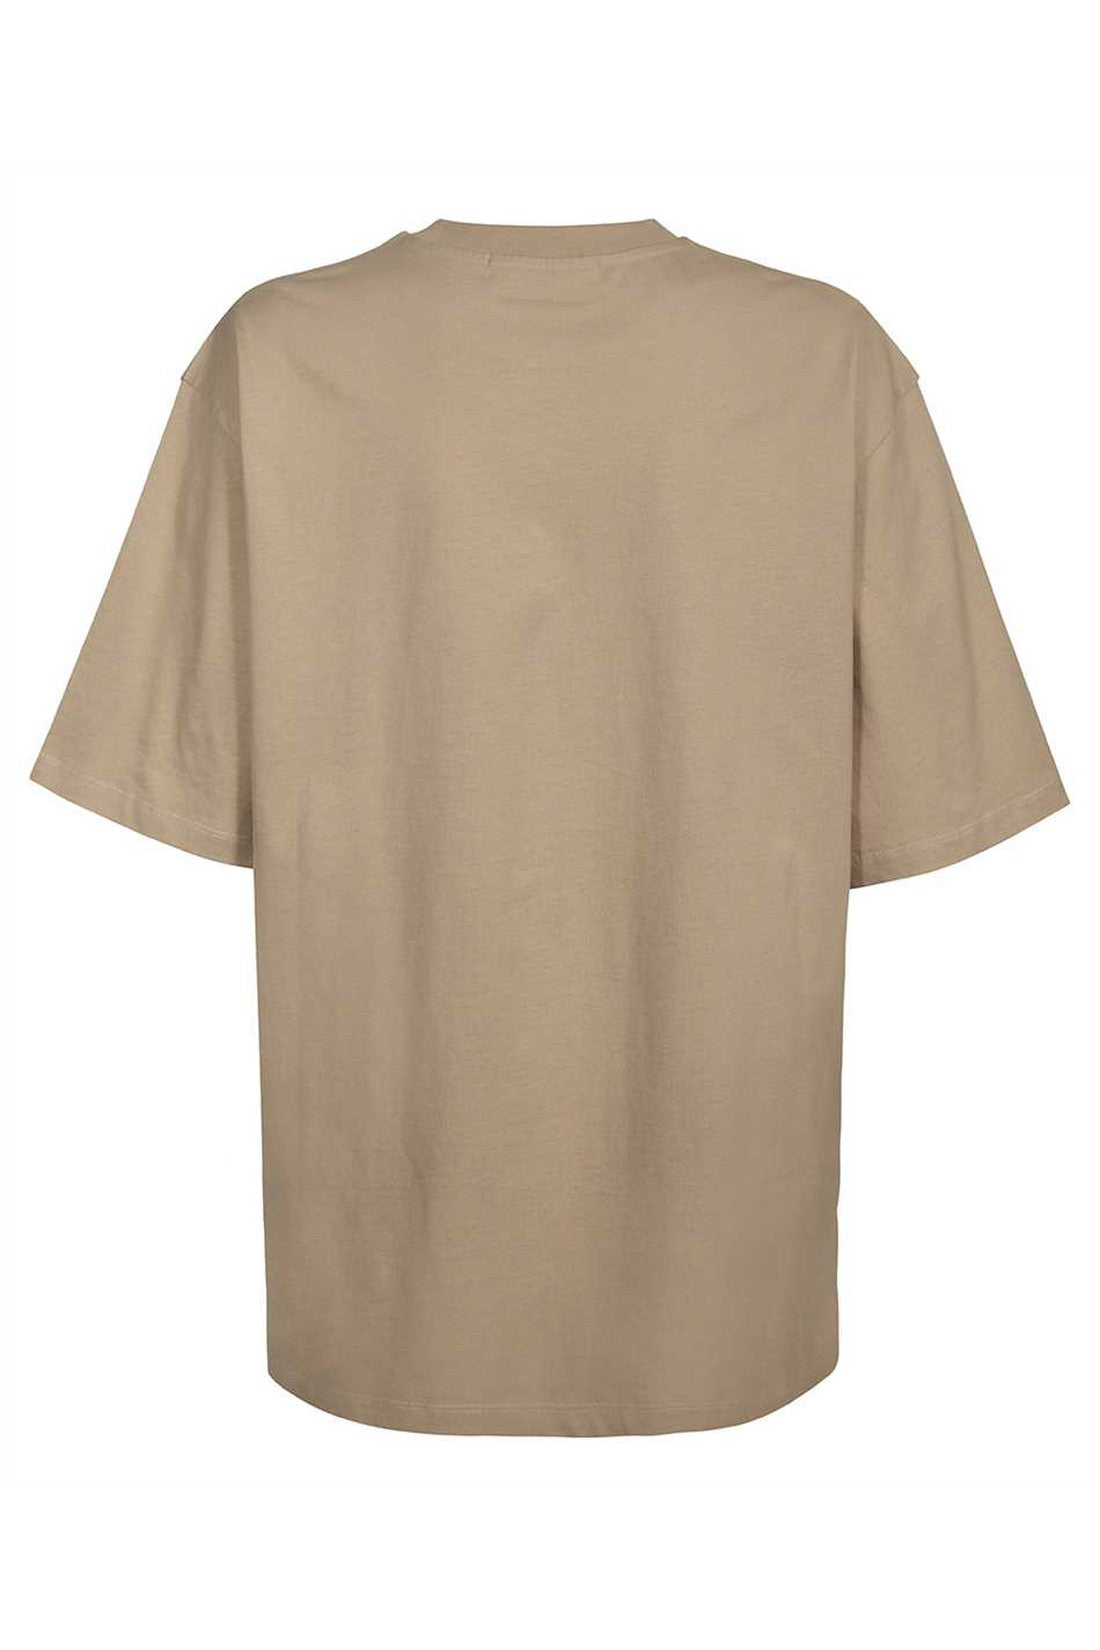 Printed cotton T-shirt-MSGM-OUTLET-SALE-ARCHIVIST